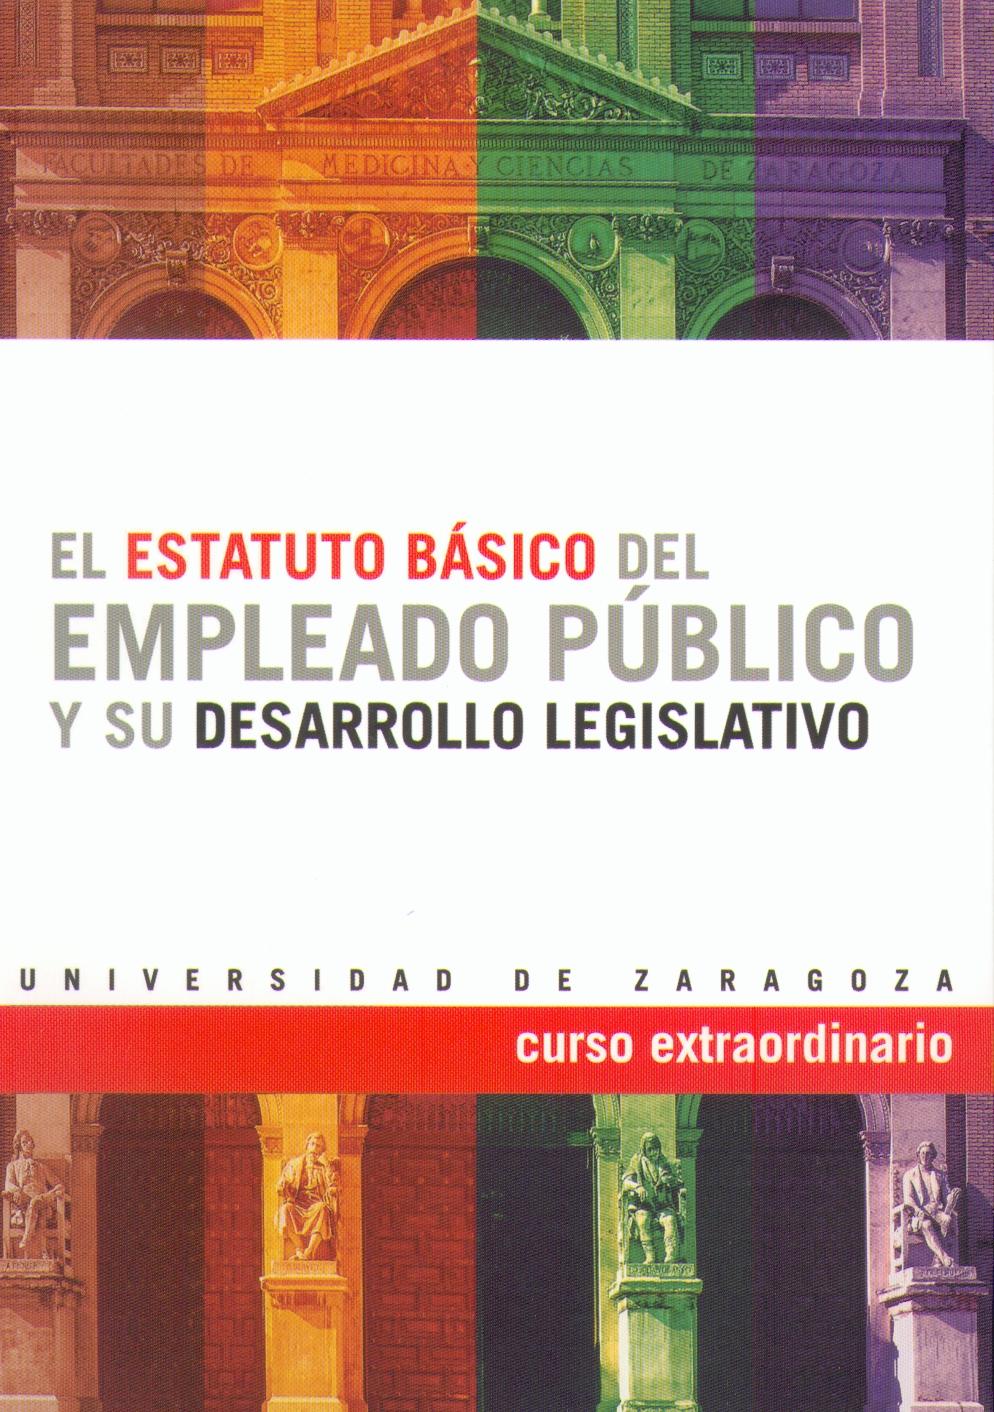 Estatuto Basico del Empleado Publico y su Desarrollo Legislativo.